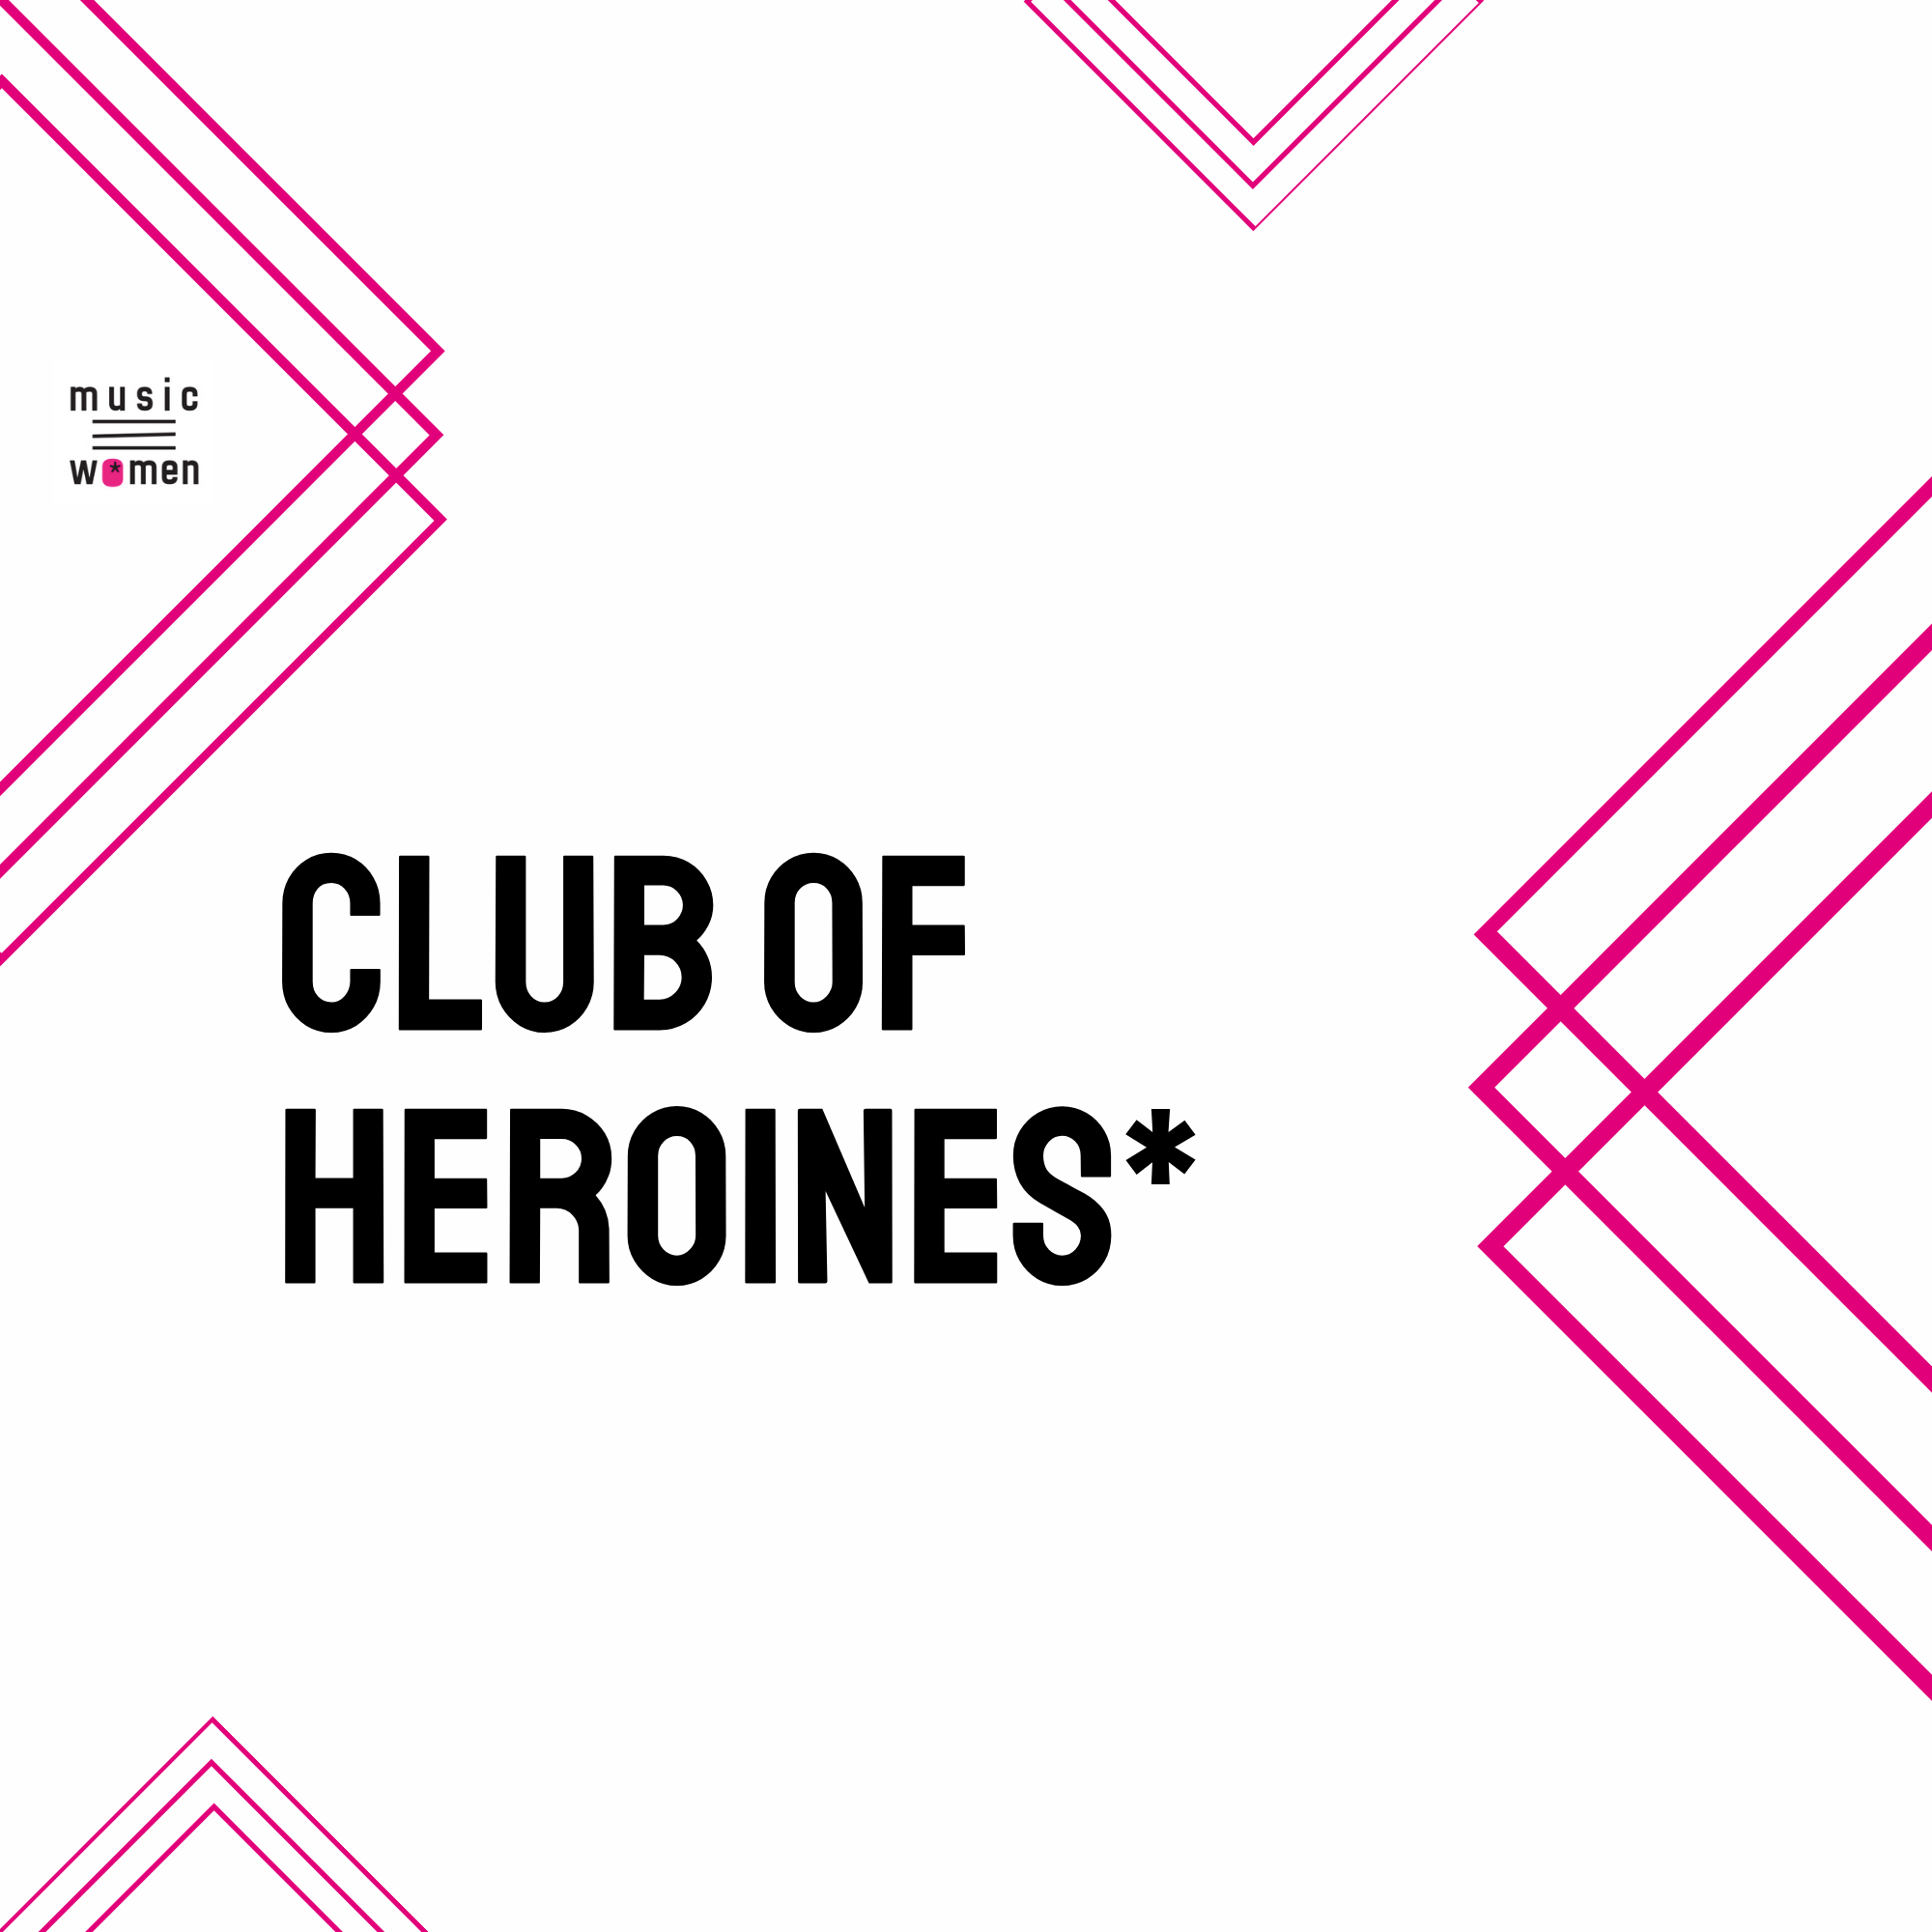 Music Women* Germany präsentiert die CLUB OF HEROINES* Reihe!